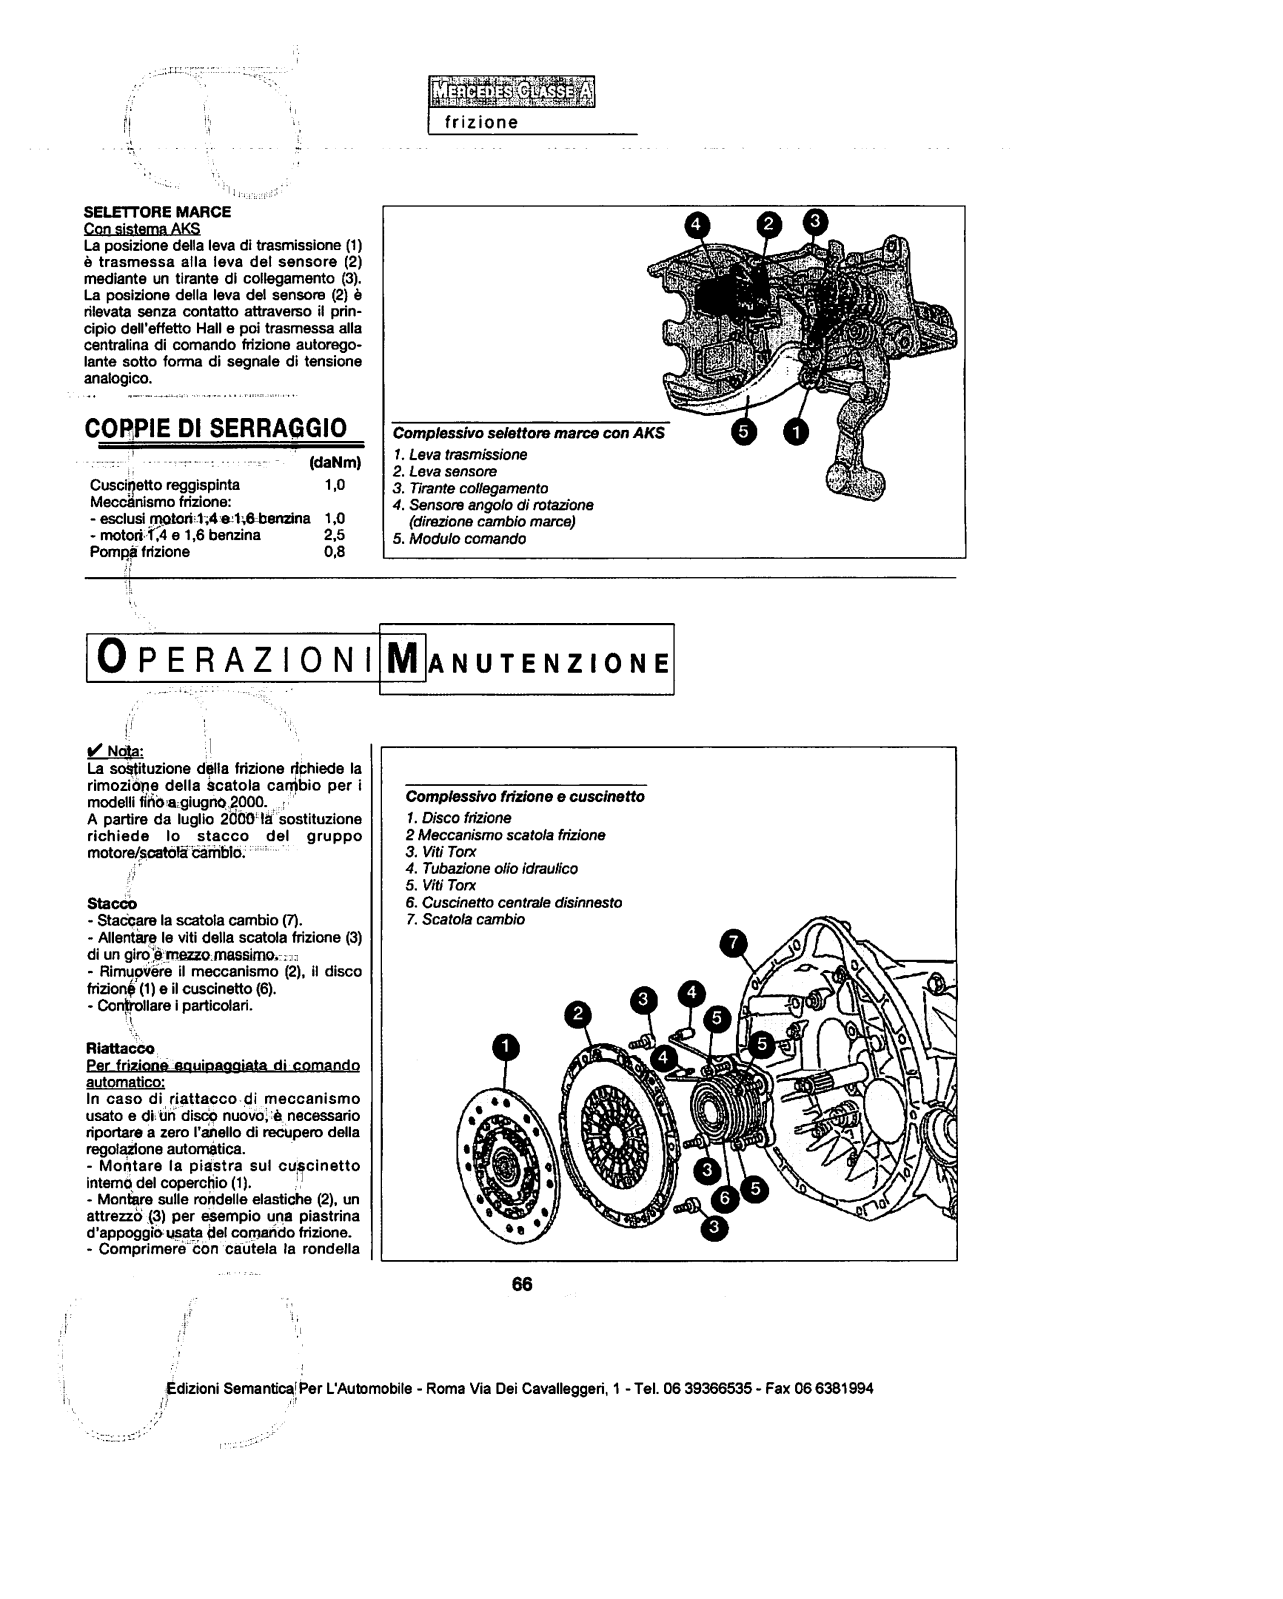 w168 - (W168): Manual técnico - tudo sobre - 1997 a 2004 - italiano 1zfkc3p